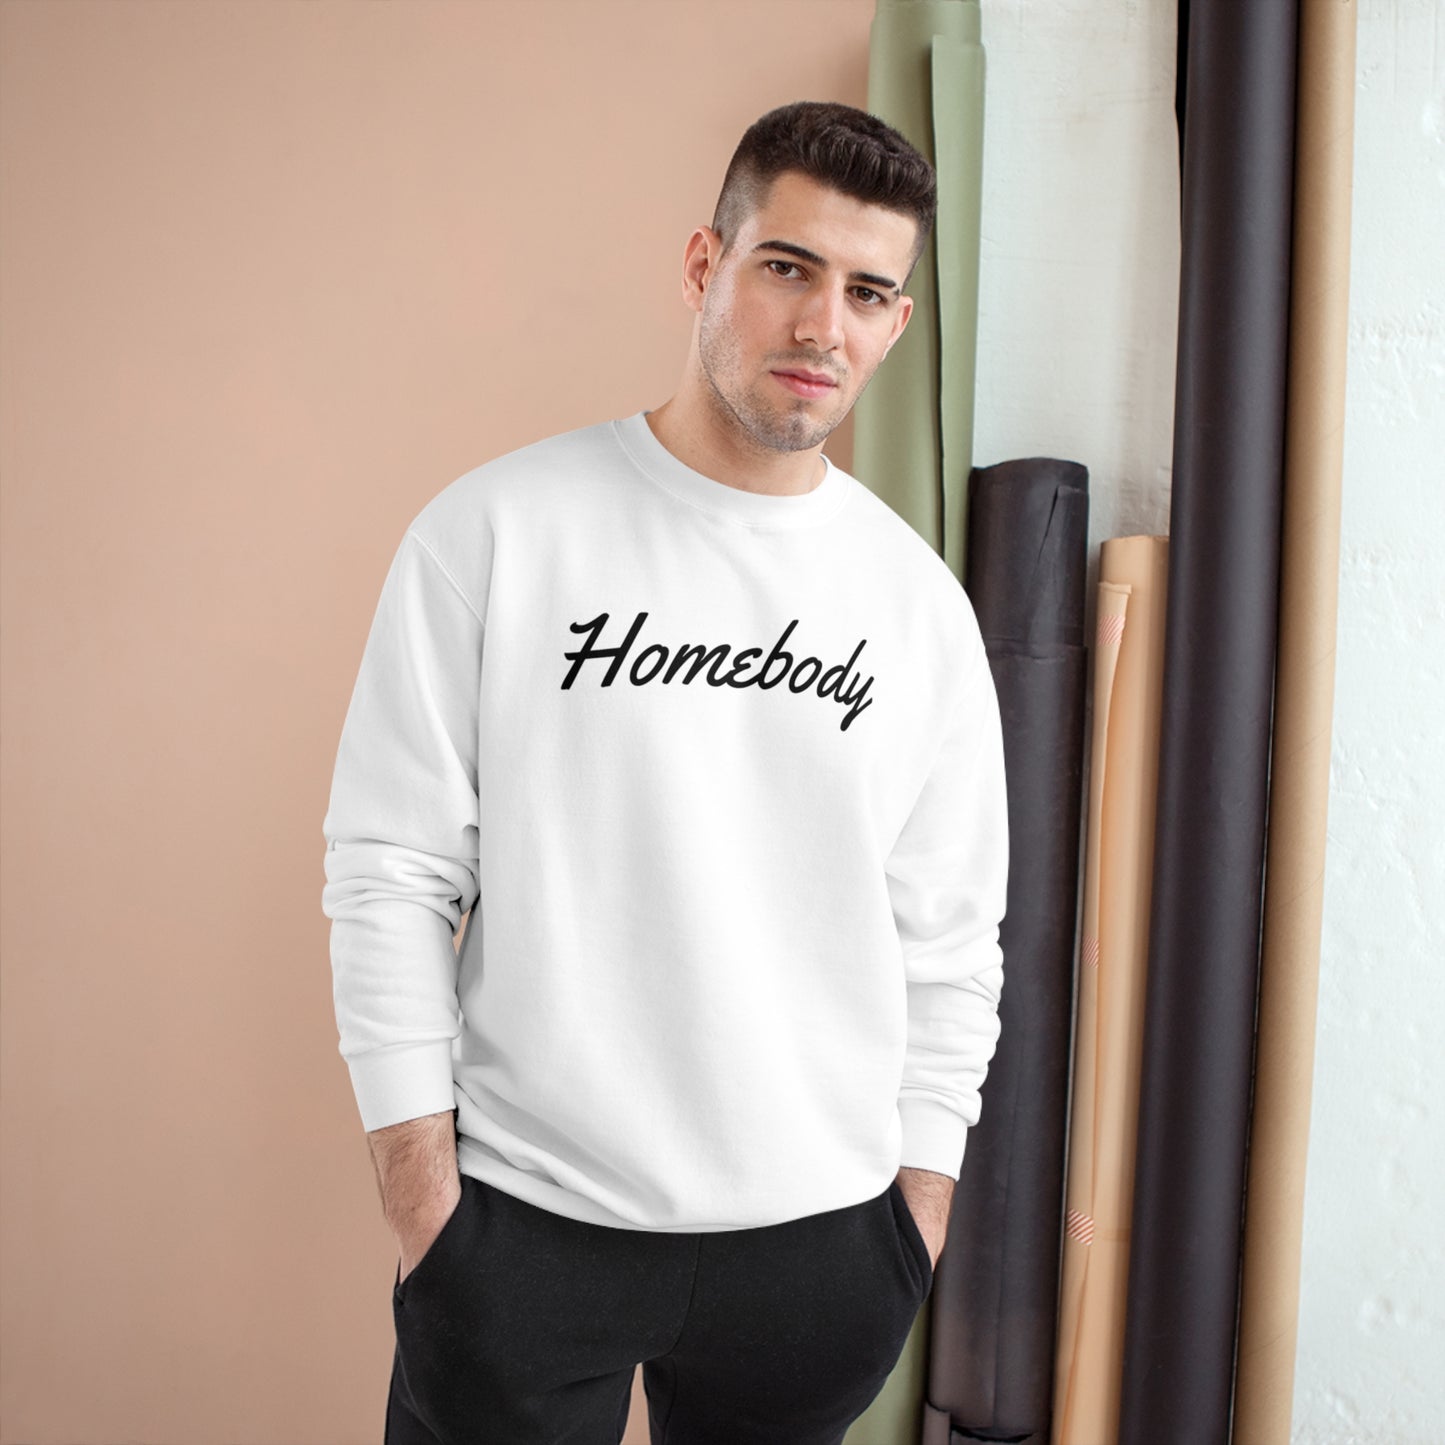 Homebody - Champion Sweatshirt